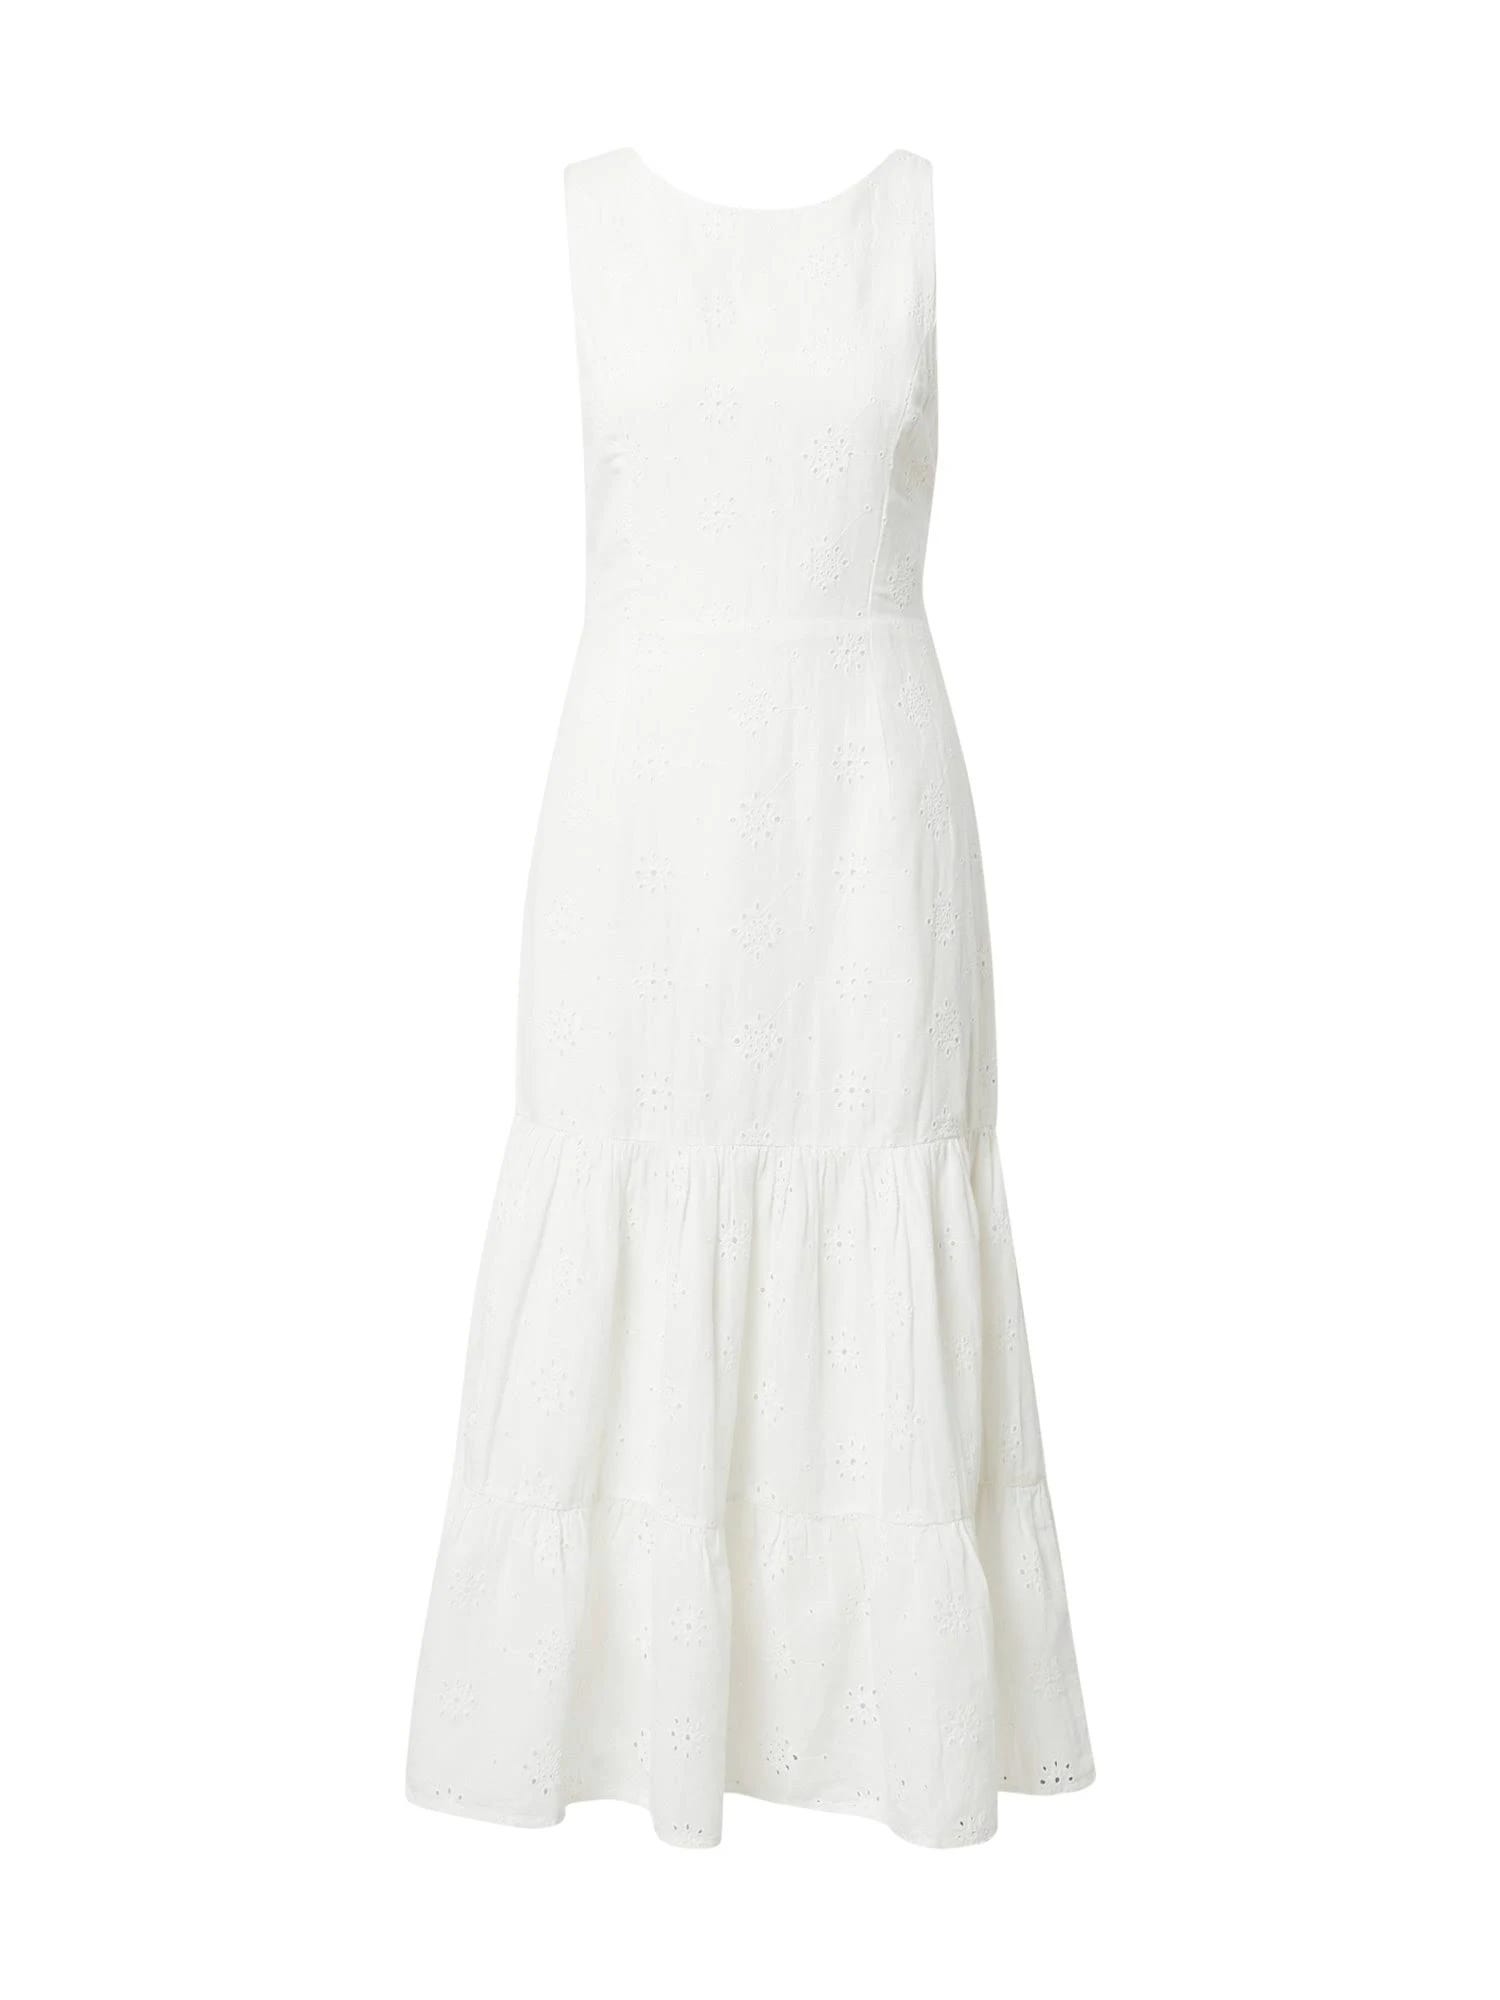 Elegant White Eyelet Maxi Dress for Evenings | Image